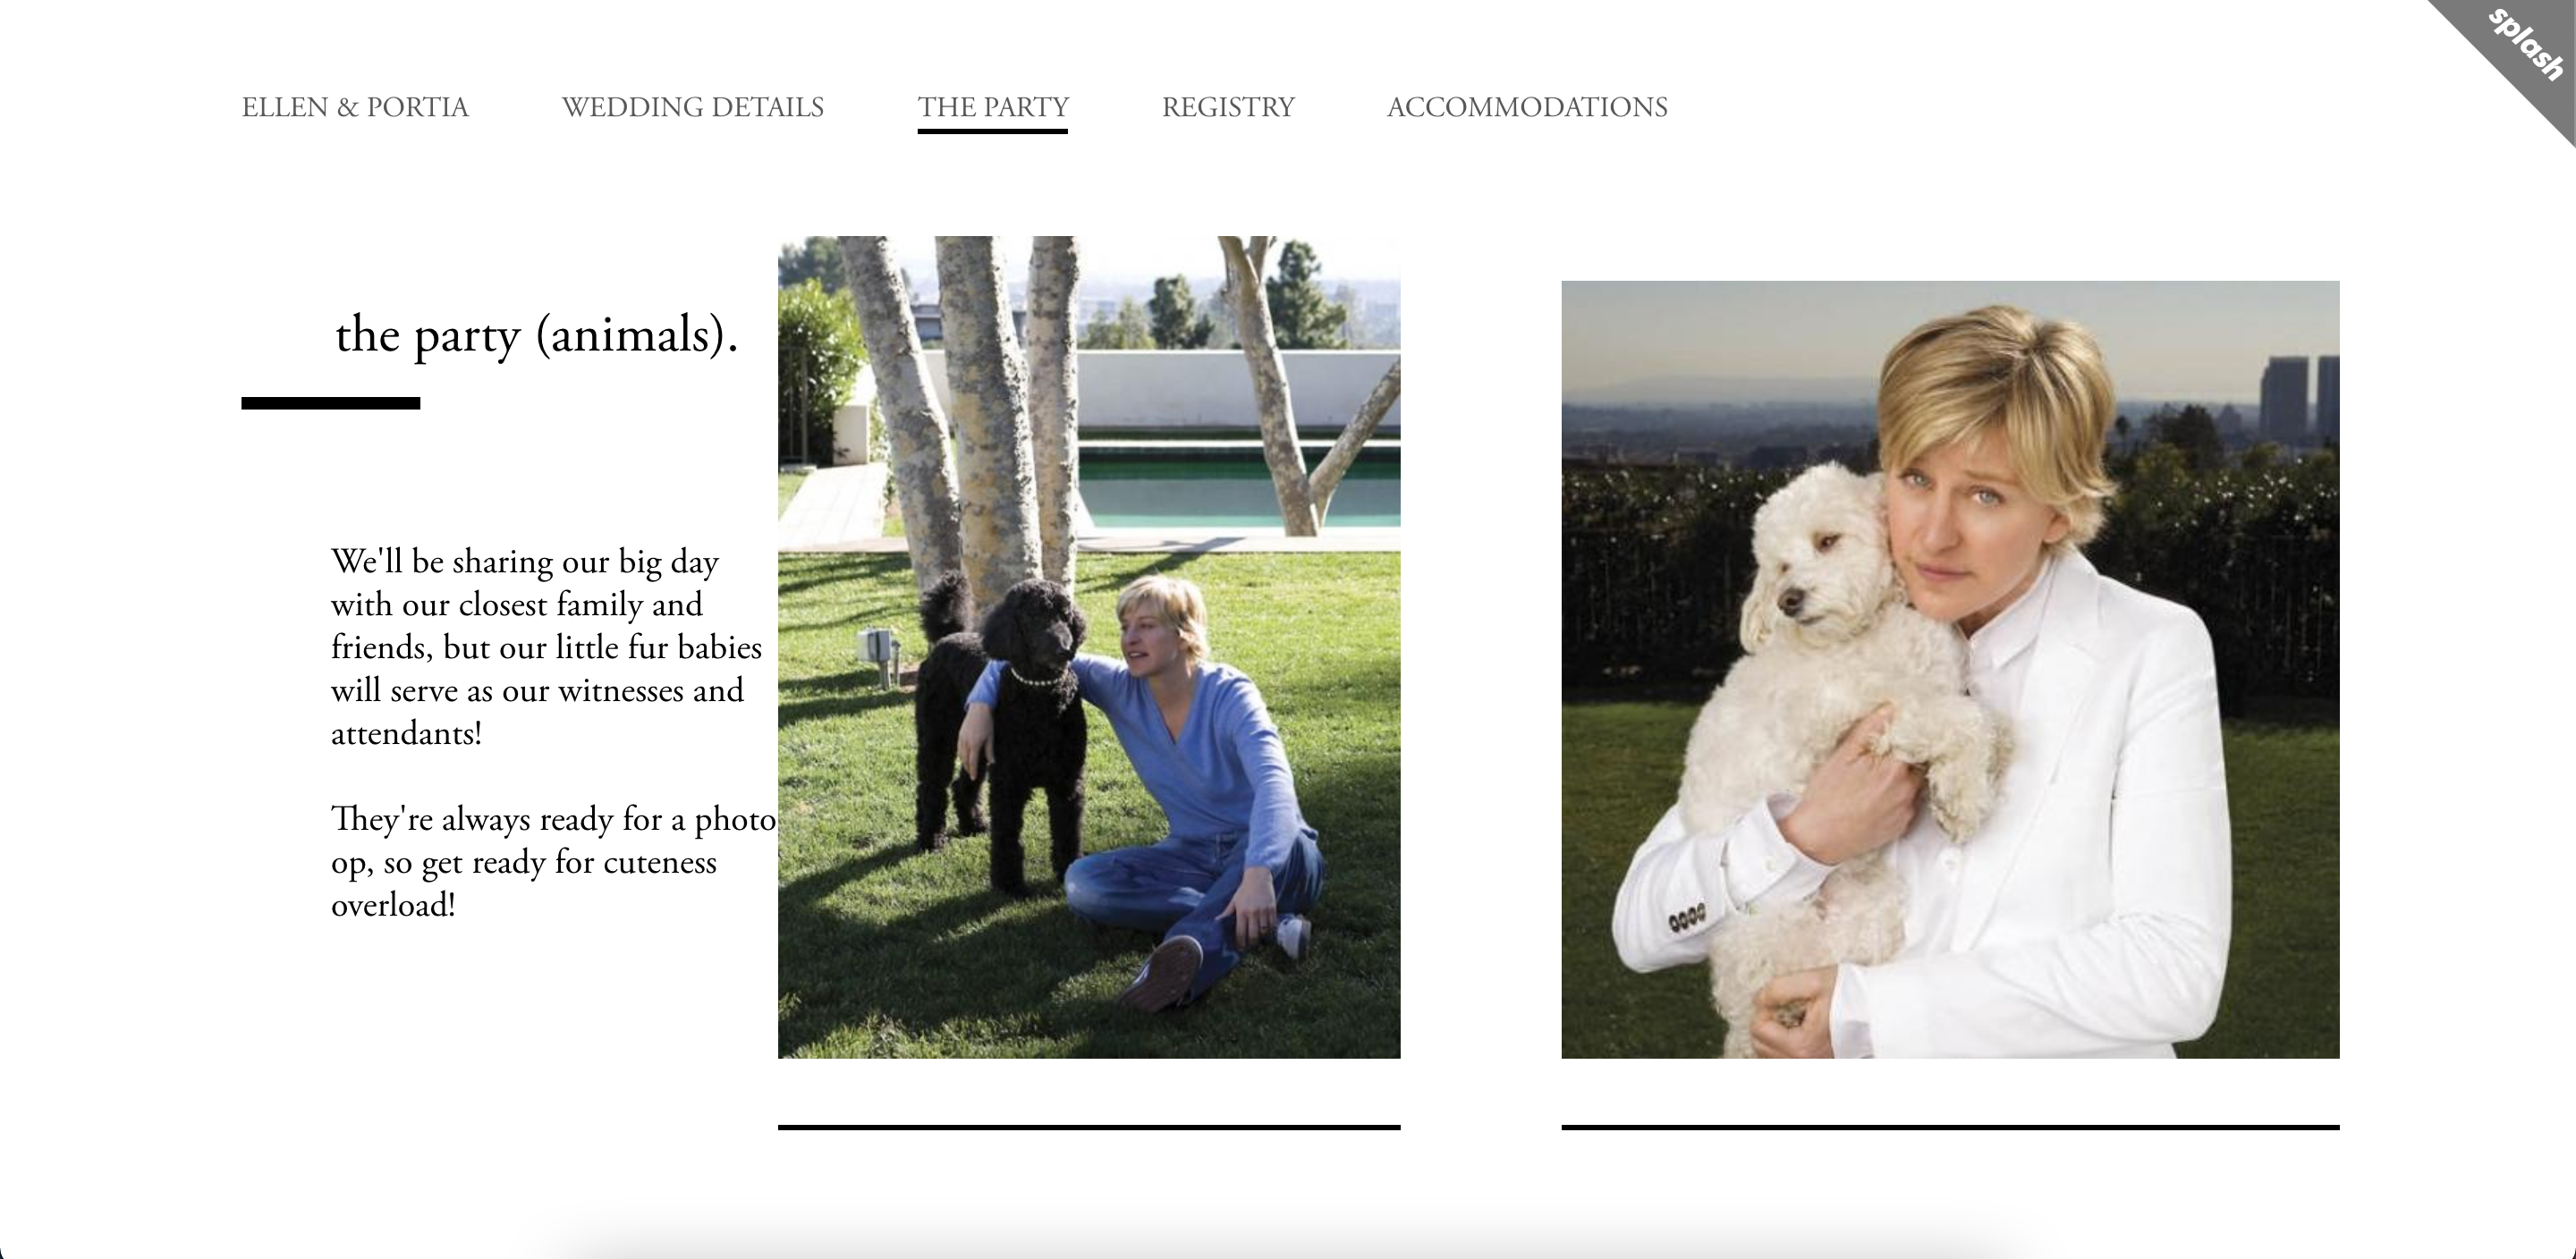 Ellen & Portia's Wedding Website